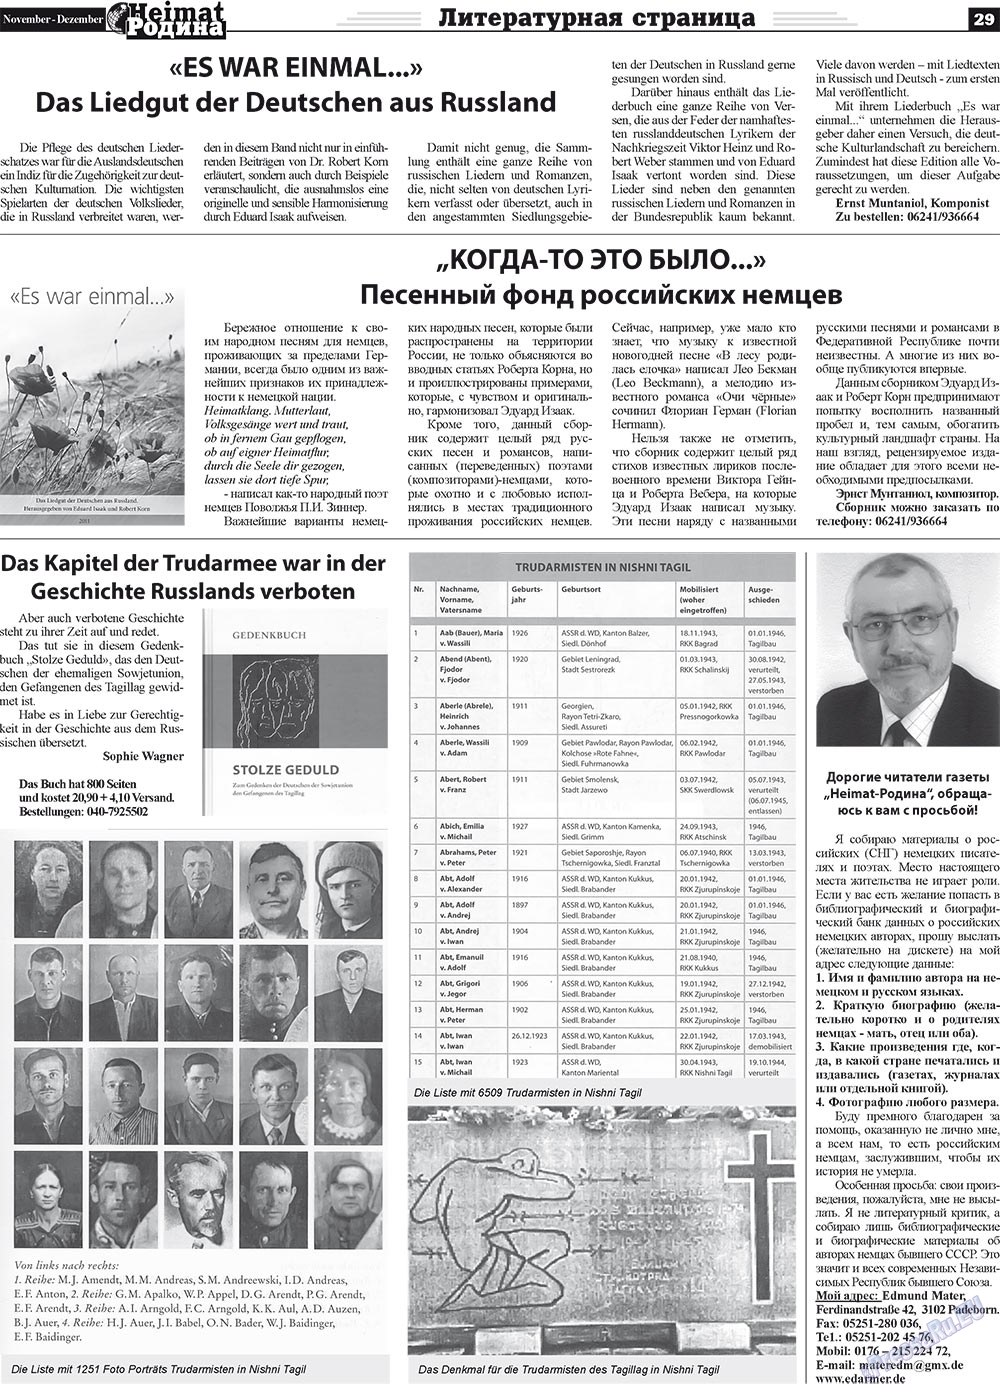 Heimat-Родина (газета). 2011 год, номер 11, стр. 29